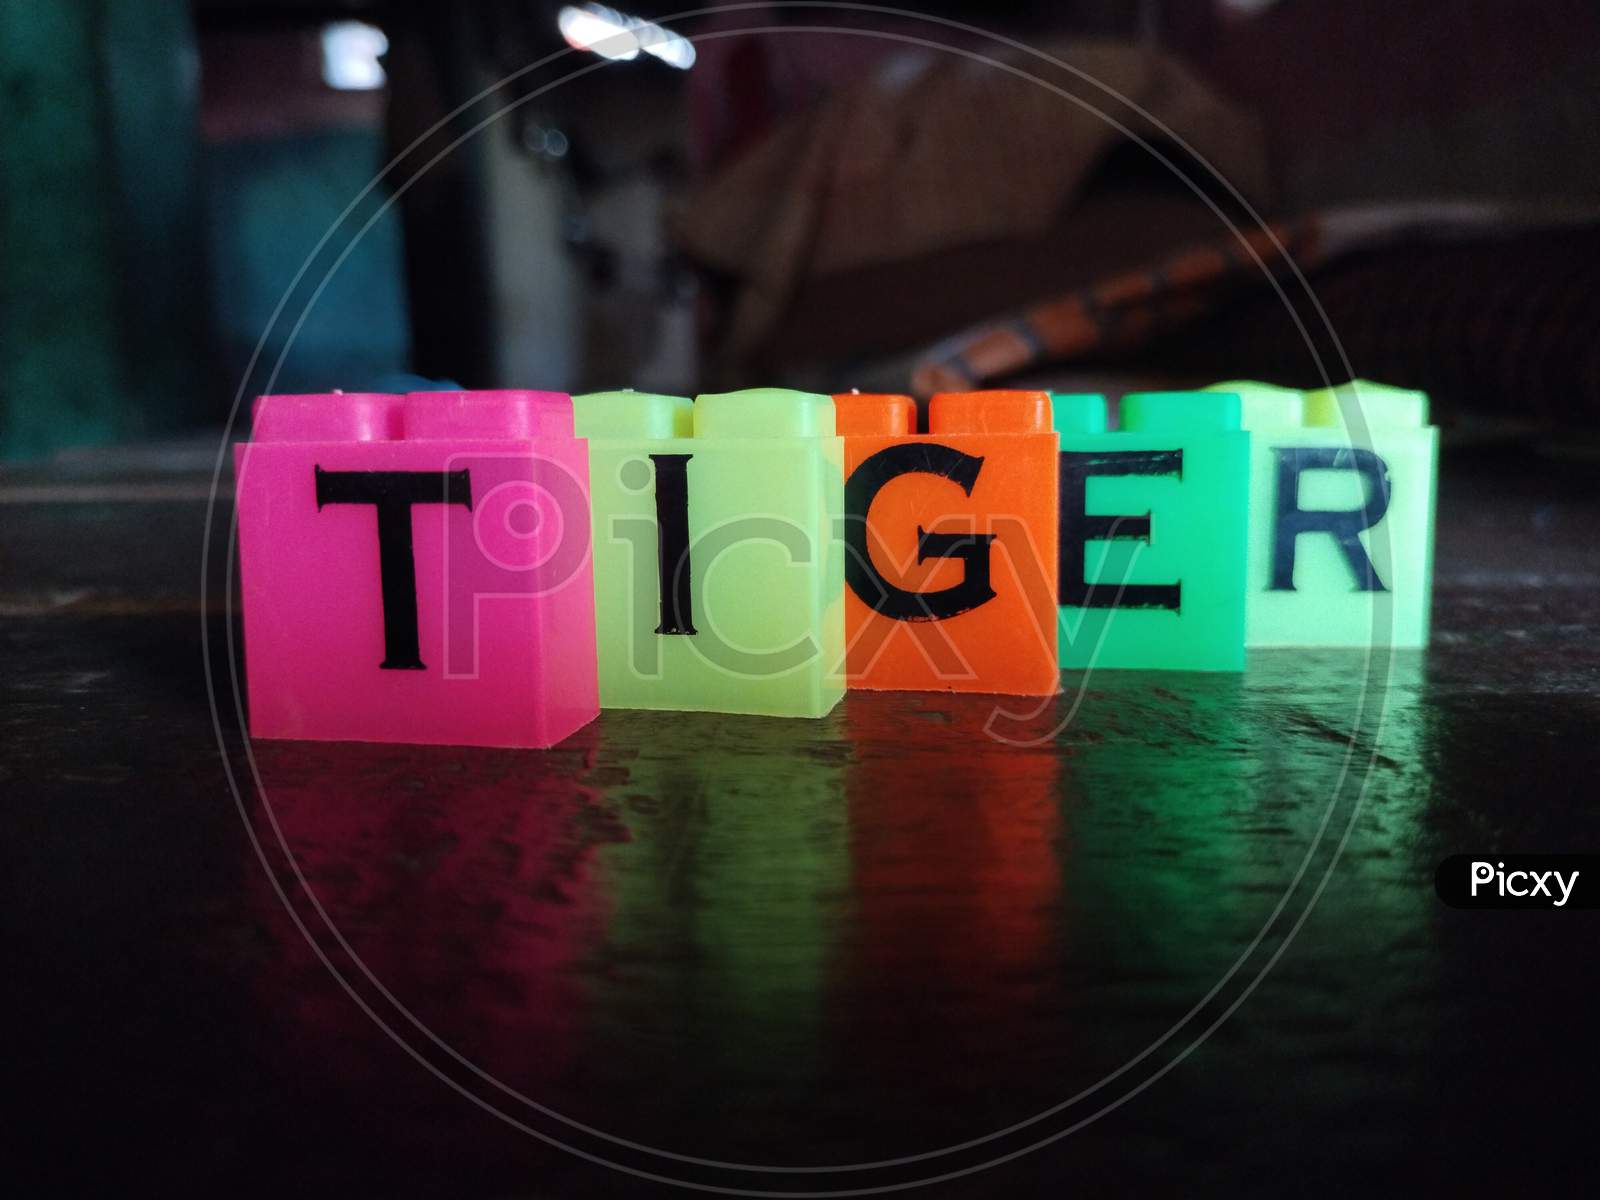 Letter tiger